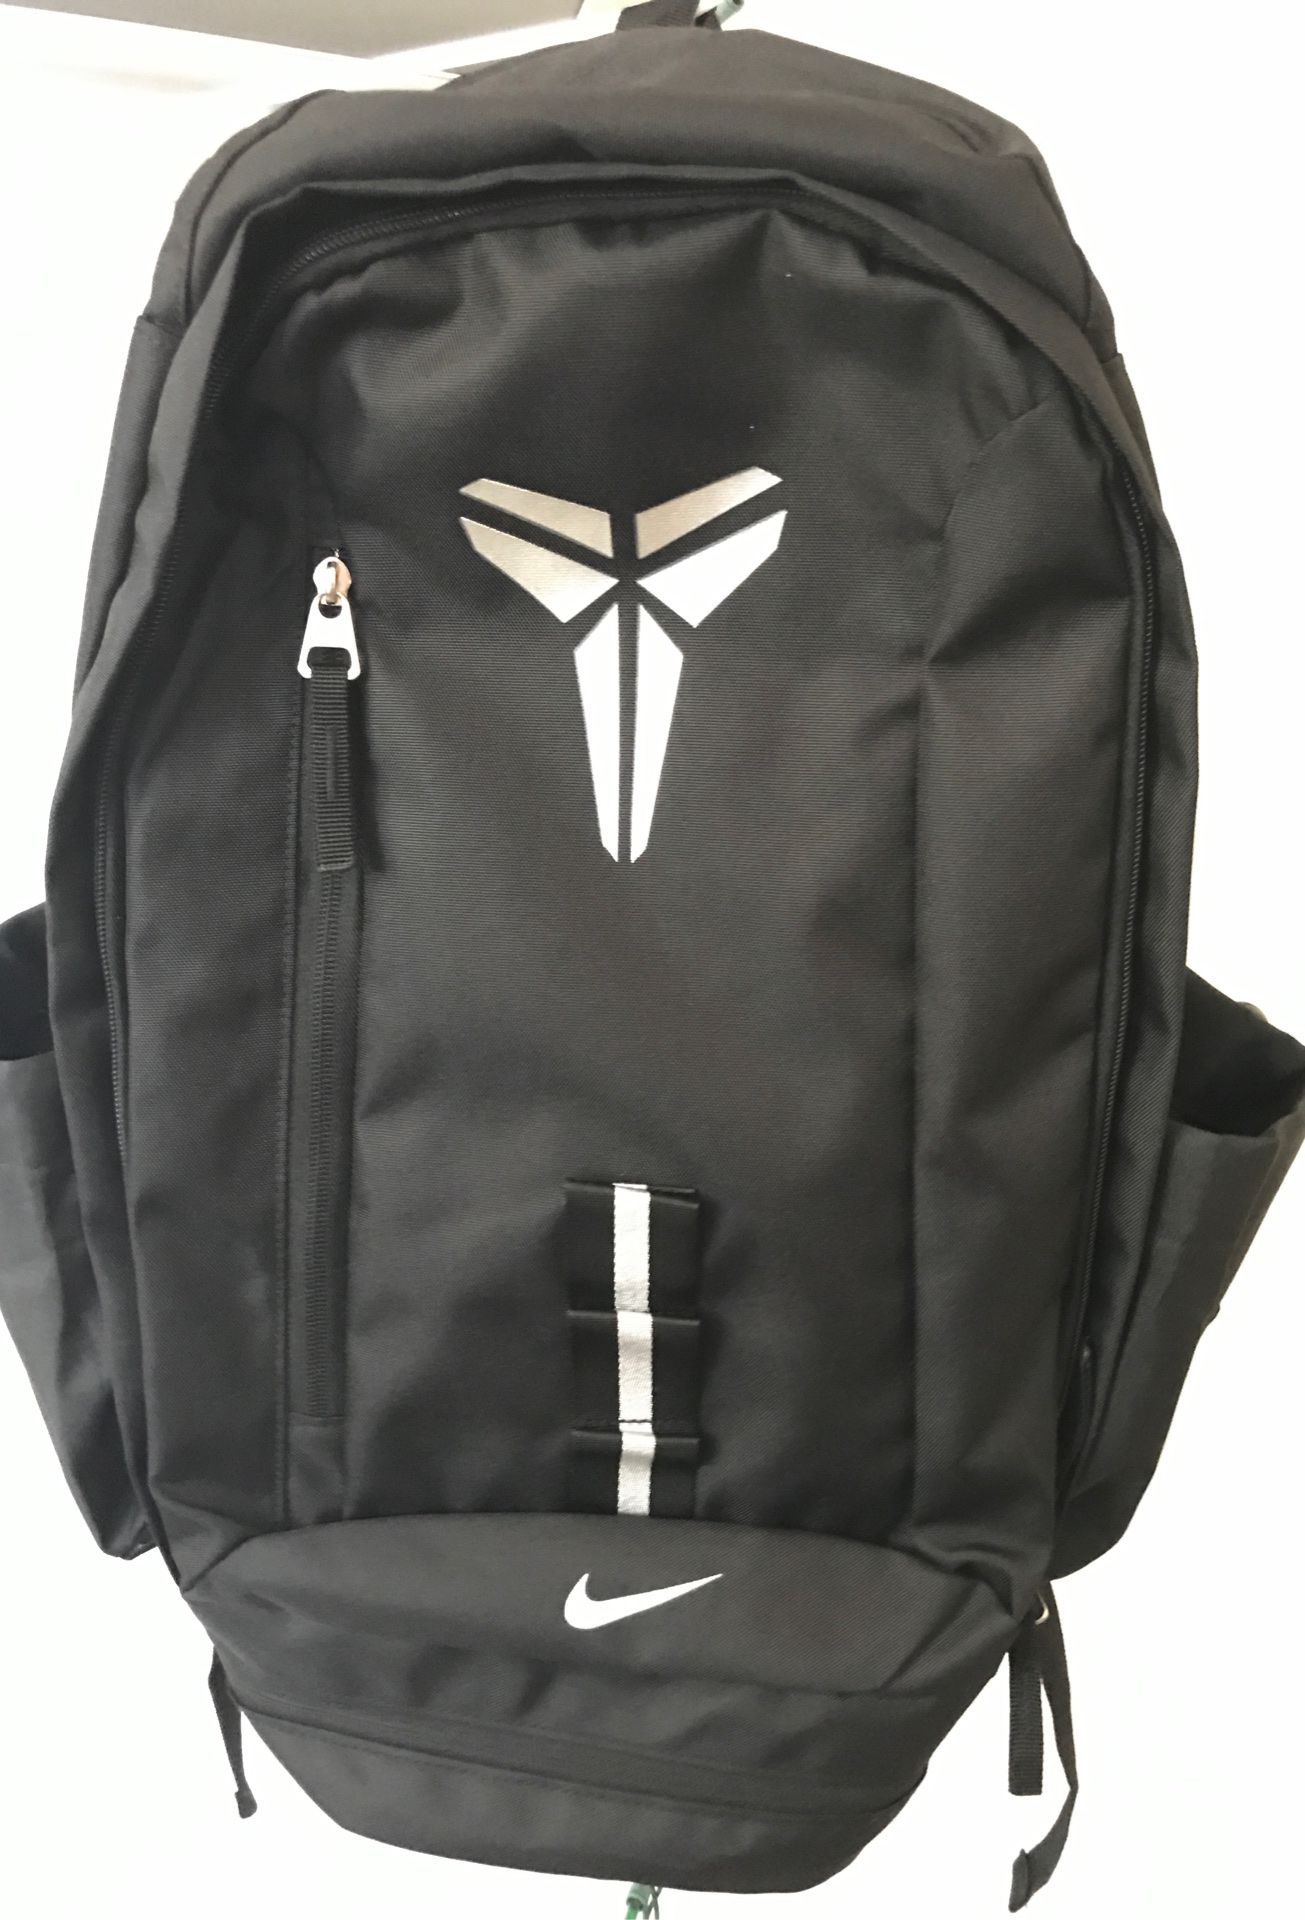 Nike Basketball Kobe Bryant Bag